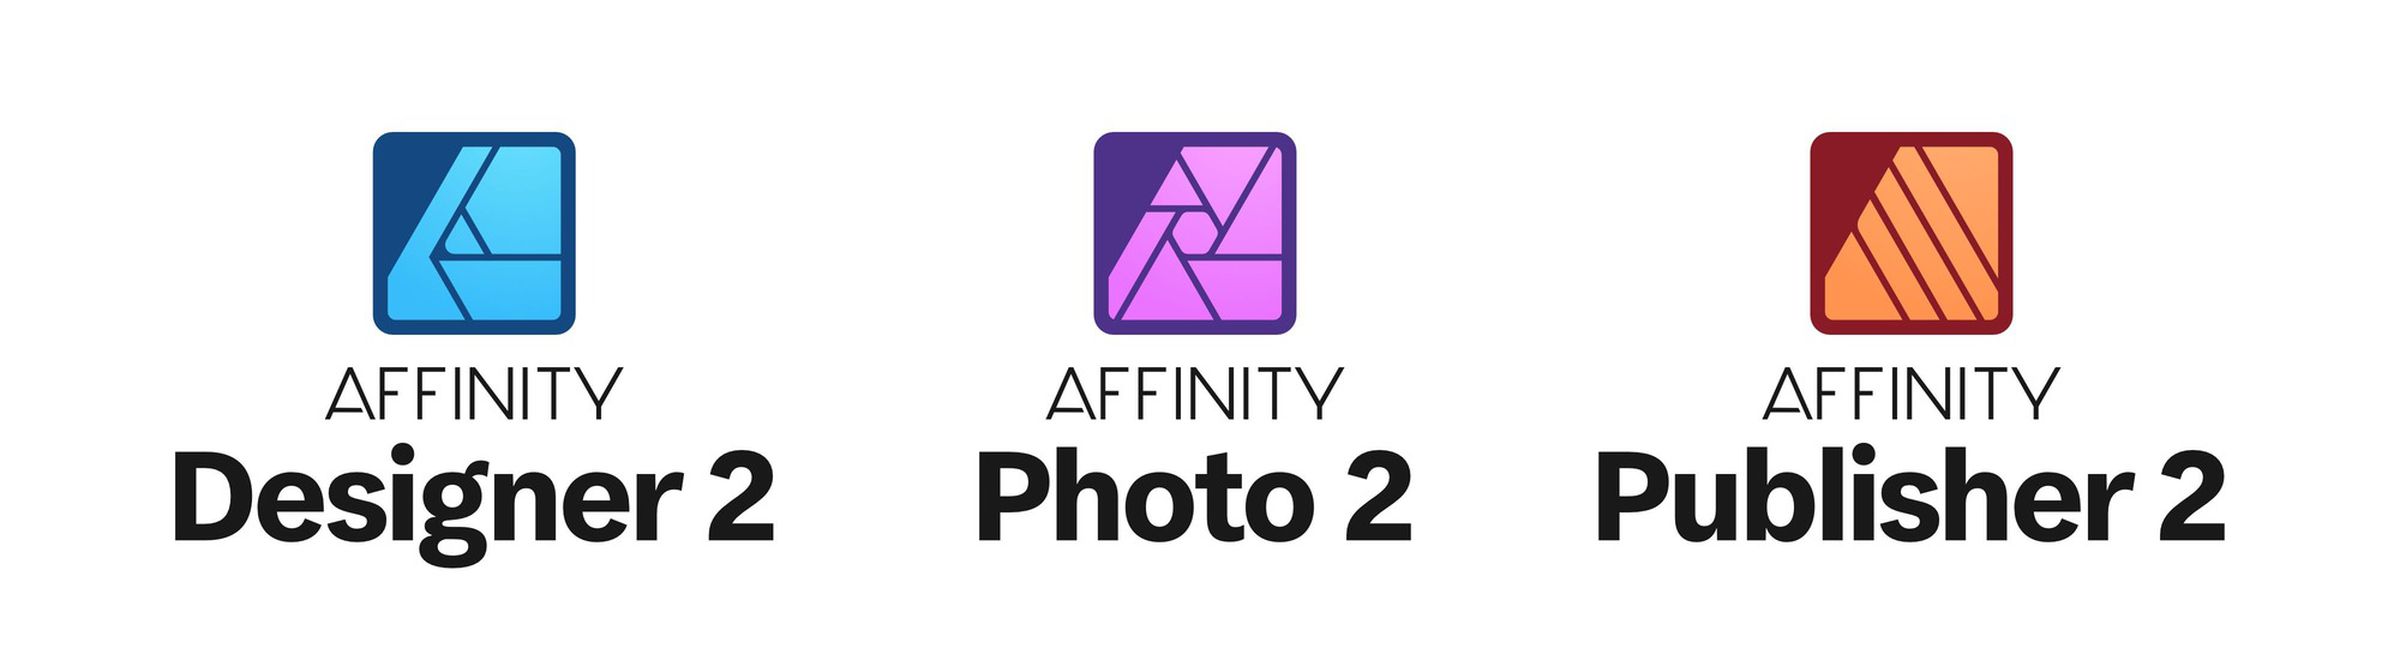 The new Affinity Designer 2, Affinity Photo2, and Affinity Publisher 2 logos.